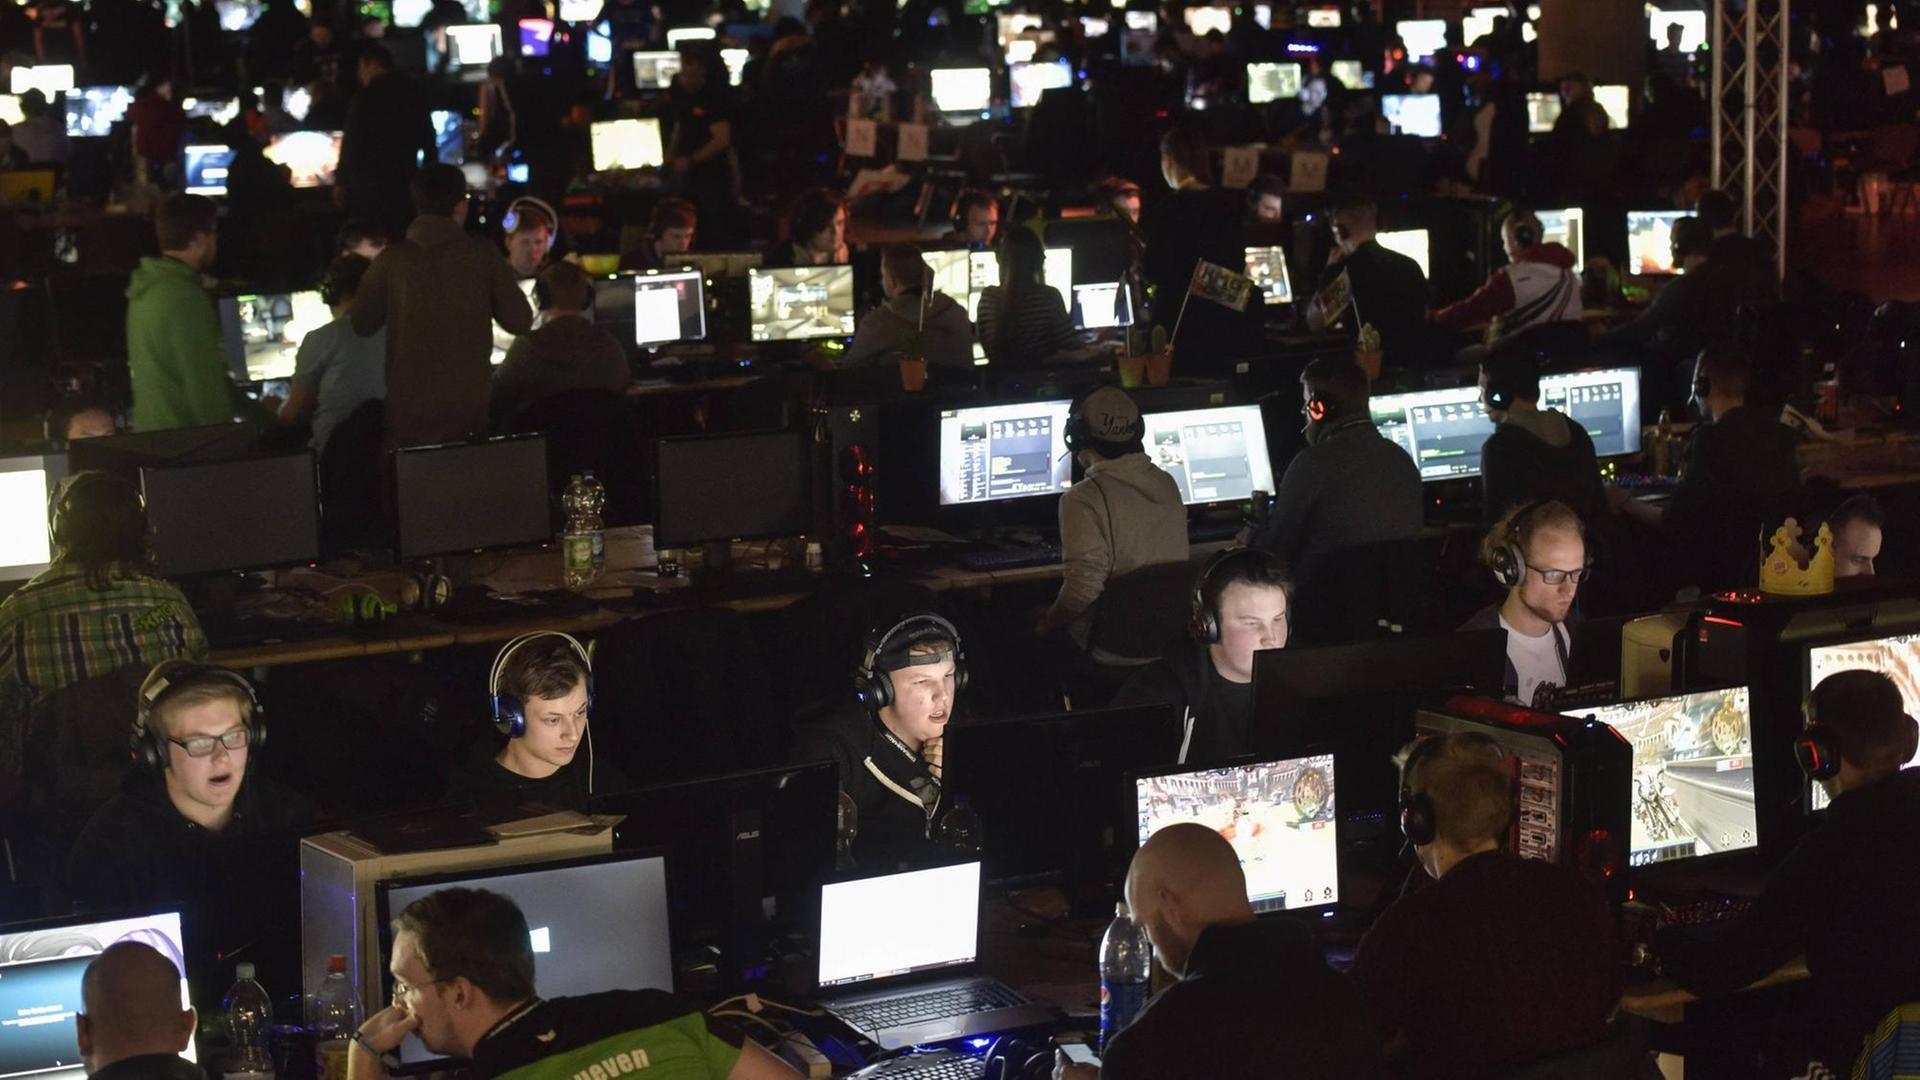 Bei der Computerspielemesse und LAN-Party Dreamhack 2016 auf dem Messegelände Leipzig reisten mehrere Tausend Besucher an. Bei einer sogenannten LAN-Party nahmen 1.000 Spielerinnen und Spieler an einem Computerspiele-Turnier teil.